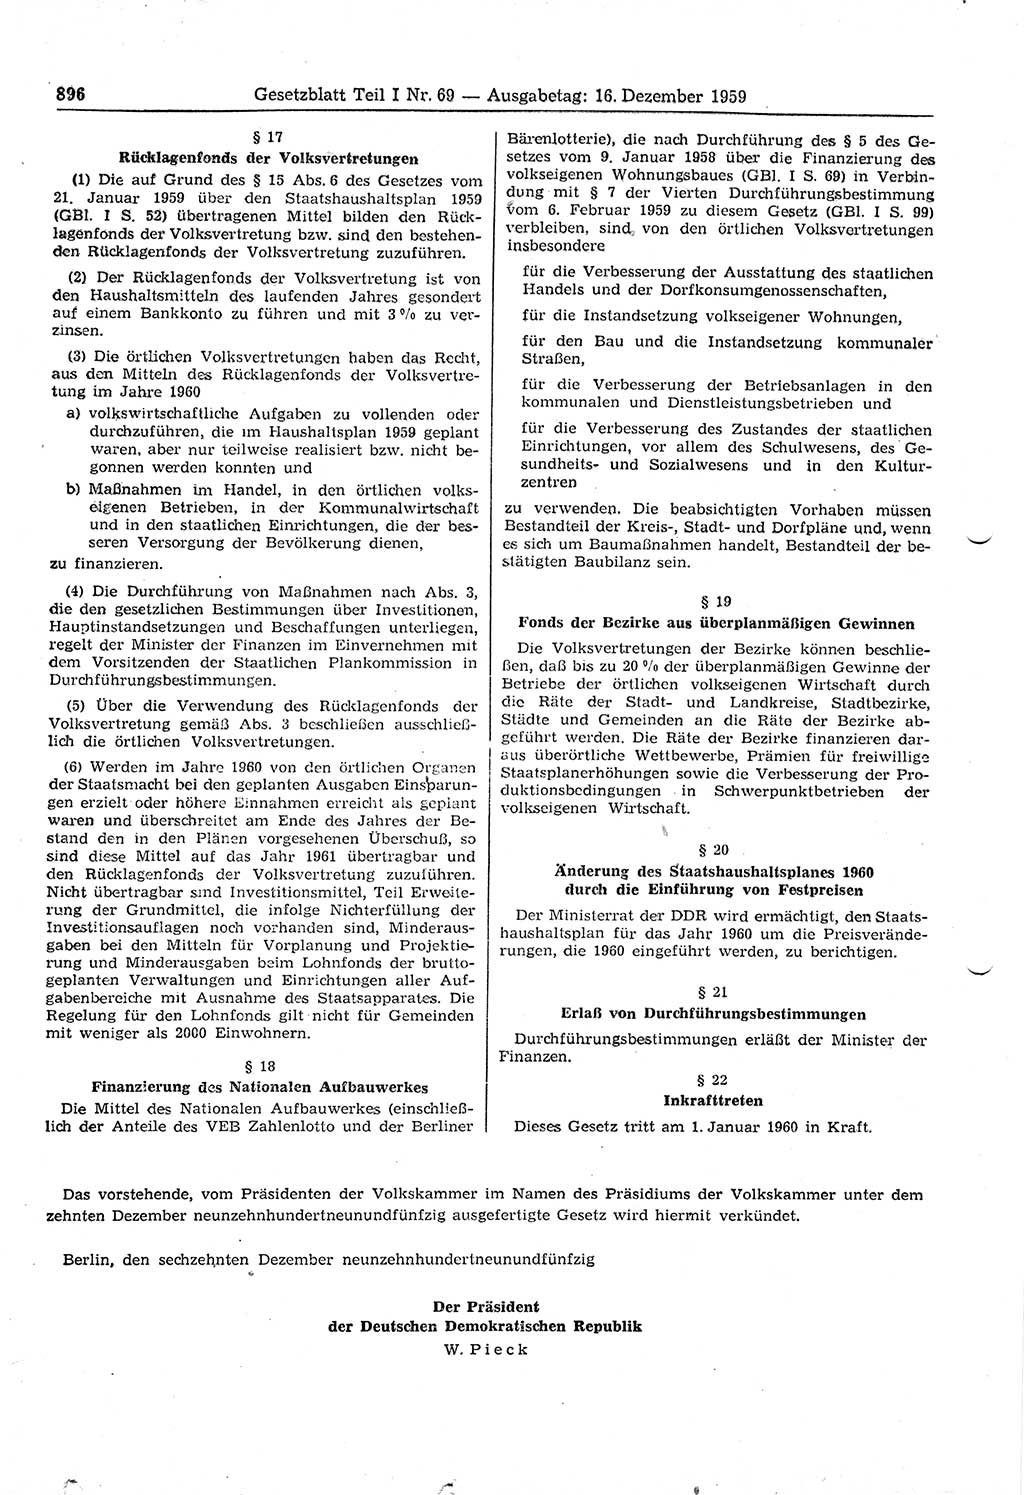 Gesetzblatt (GBl.) der Deutschen Demokratischen Republik (DDR) Teil Ⅰ 1959, Seite 896 (GBl. DDR Ⅰ 1959, S. 896)